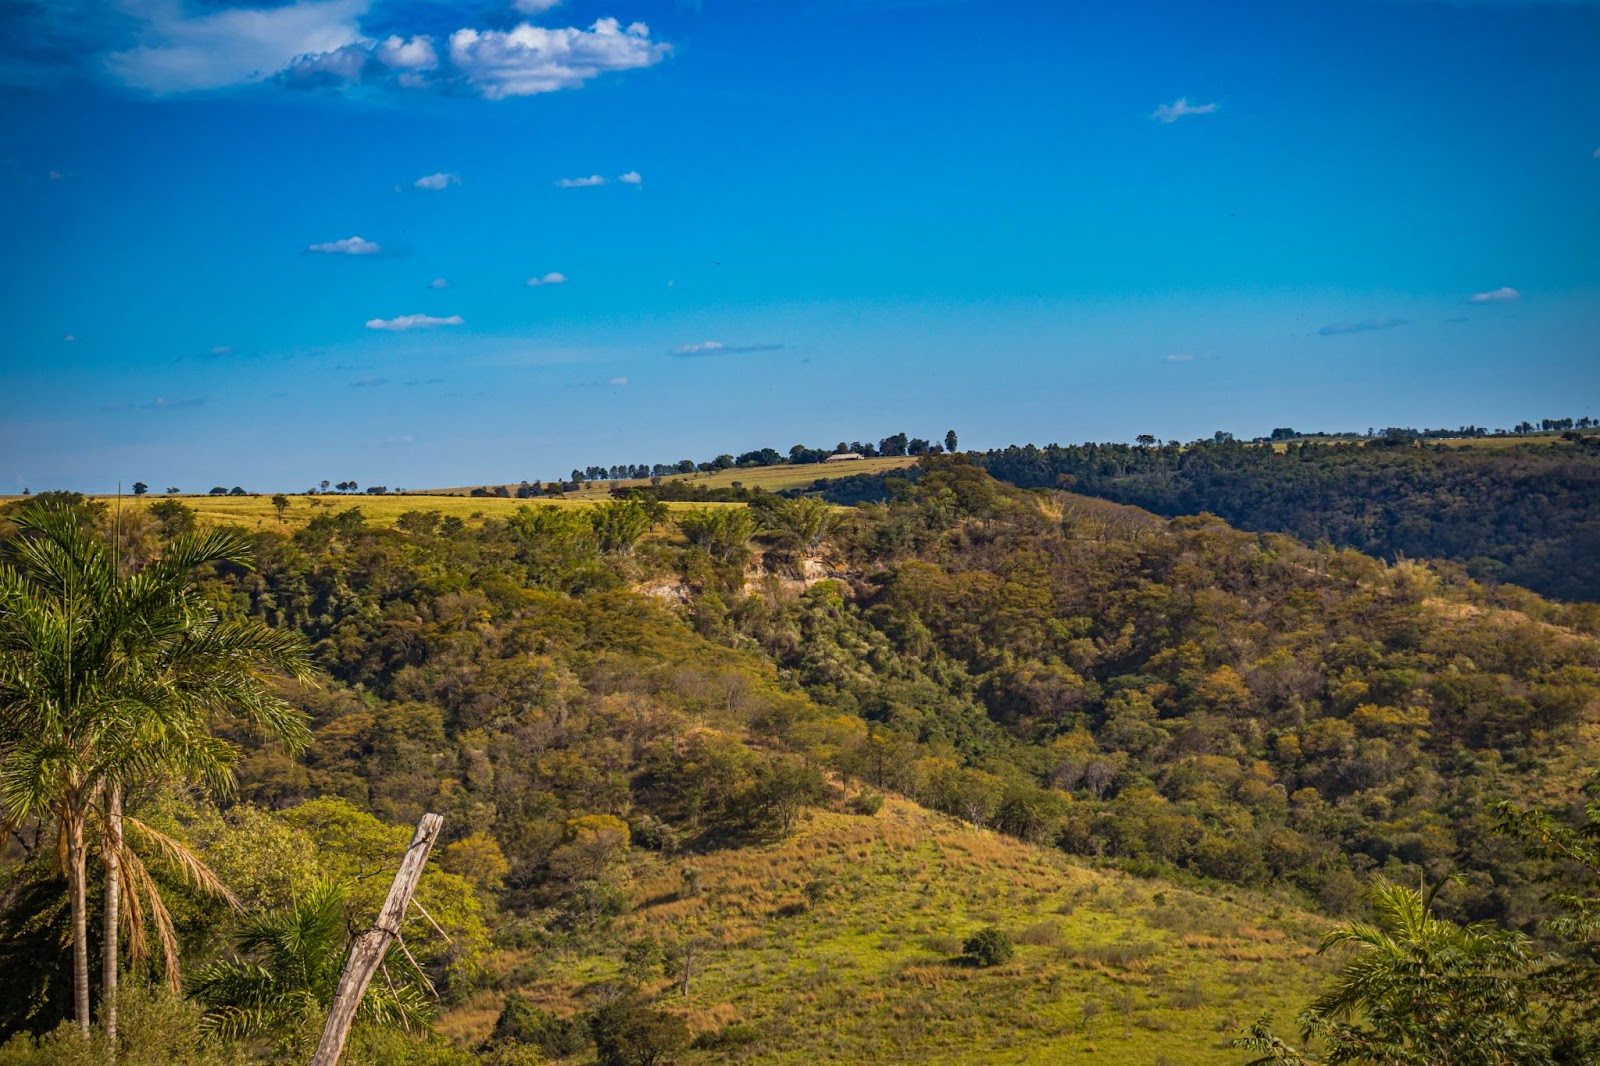 Paisagem serrana da zona rural de Marília, SP. Os montes cobertos por vegetação nativa verde se estendem até o horizonte. Ao fundo, o céu aparece azul e sem nuvens.